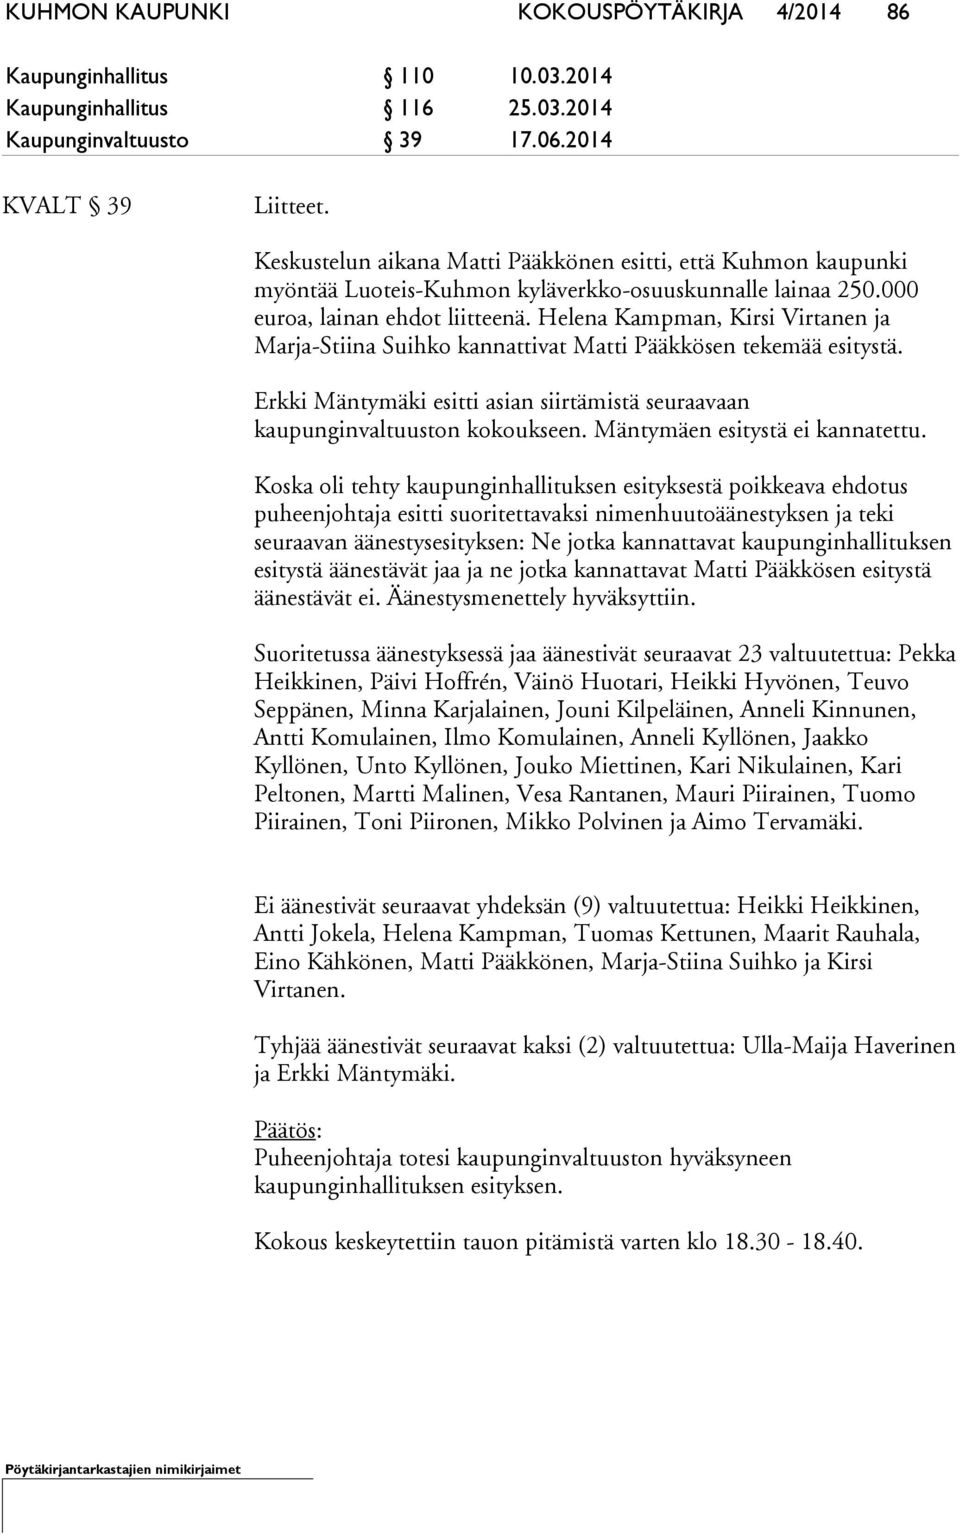 Helena Kampman, Kirsi Virtanen ja Marja-Stiina Suihko kannattivat Matti Pääkkösen tekemää esitystä. Erkki Mäntymäki esitti asian siirtämistä seuraavaan kaupunginvaltuuston kokoukseen.